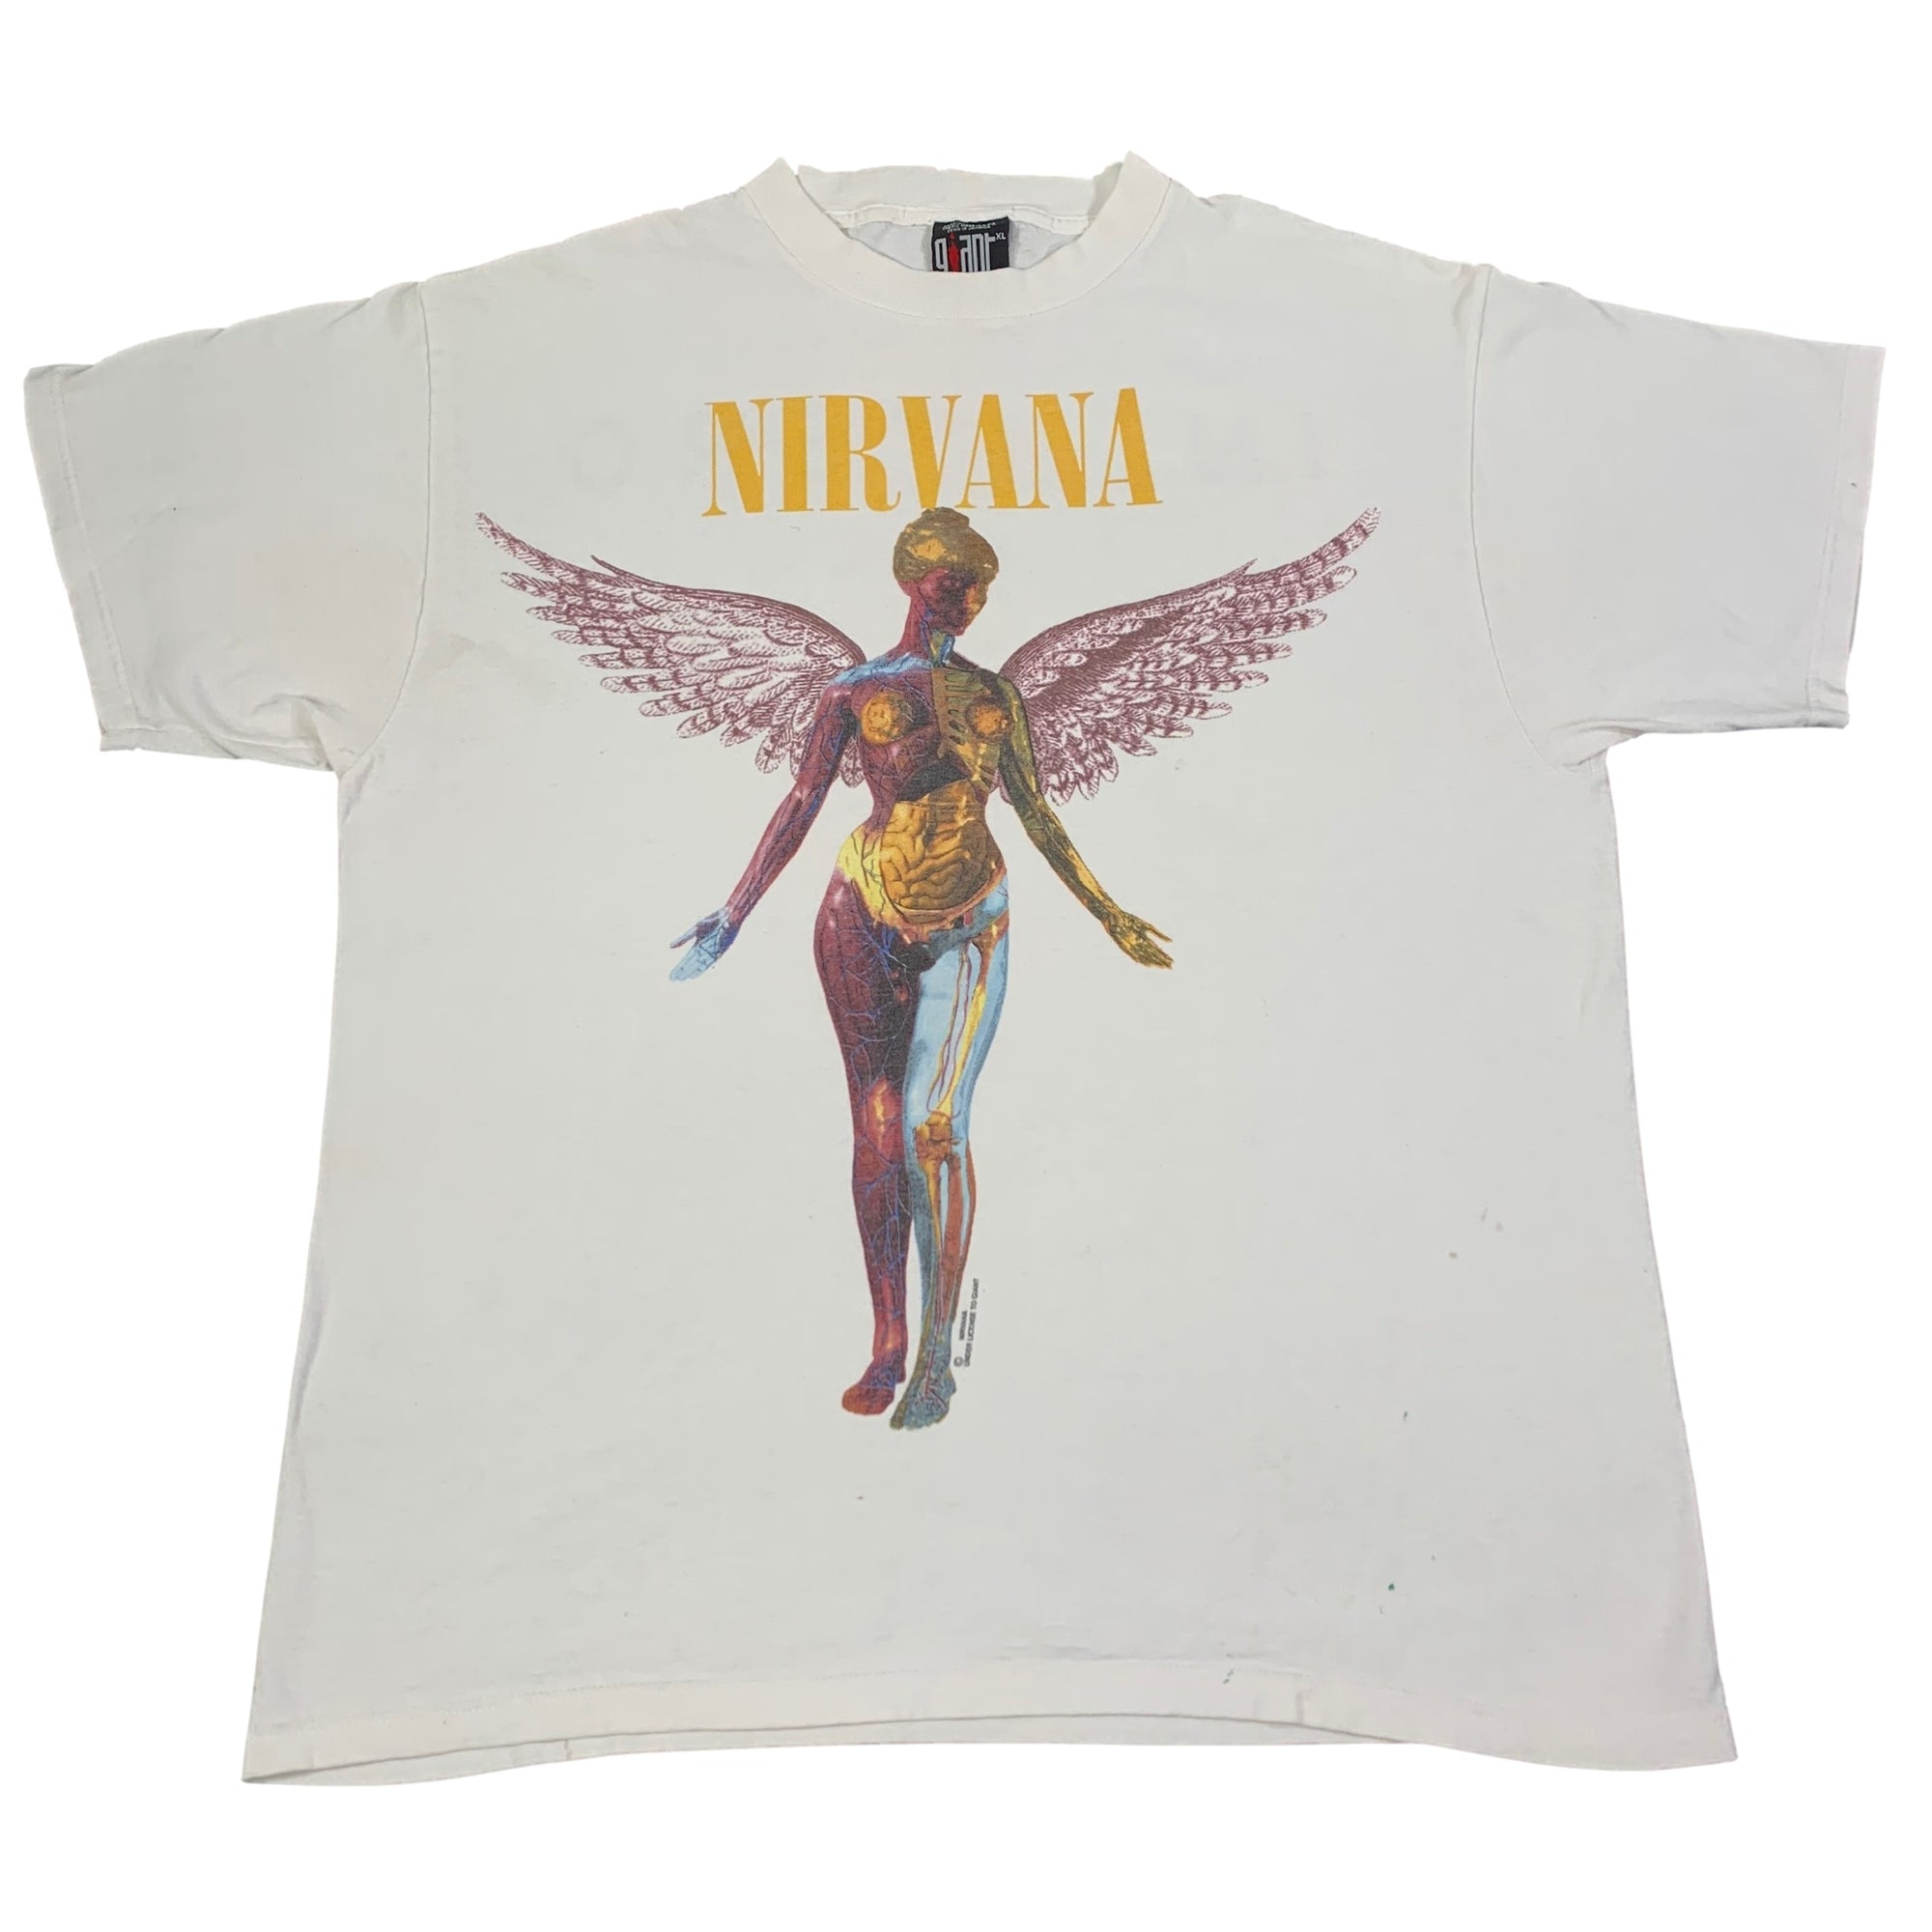 Vintage Nirvana "In Utero" T-Shirt - jointcustodydc